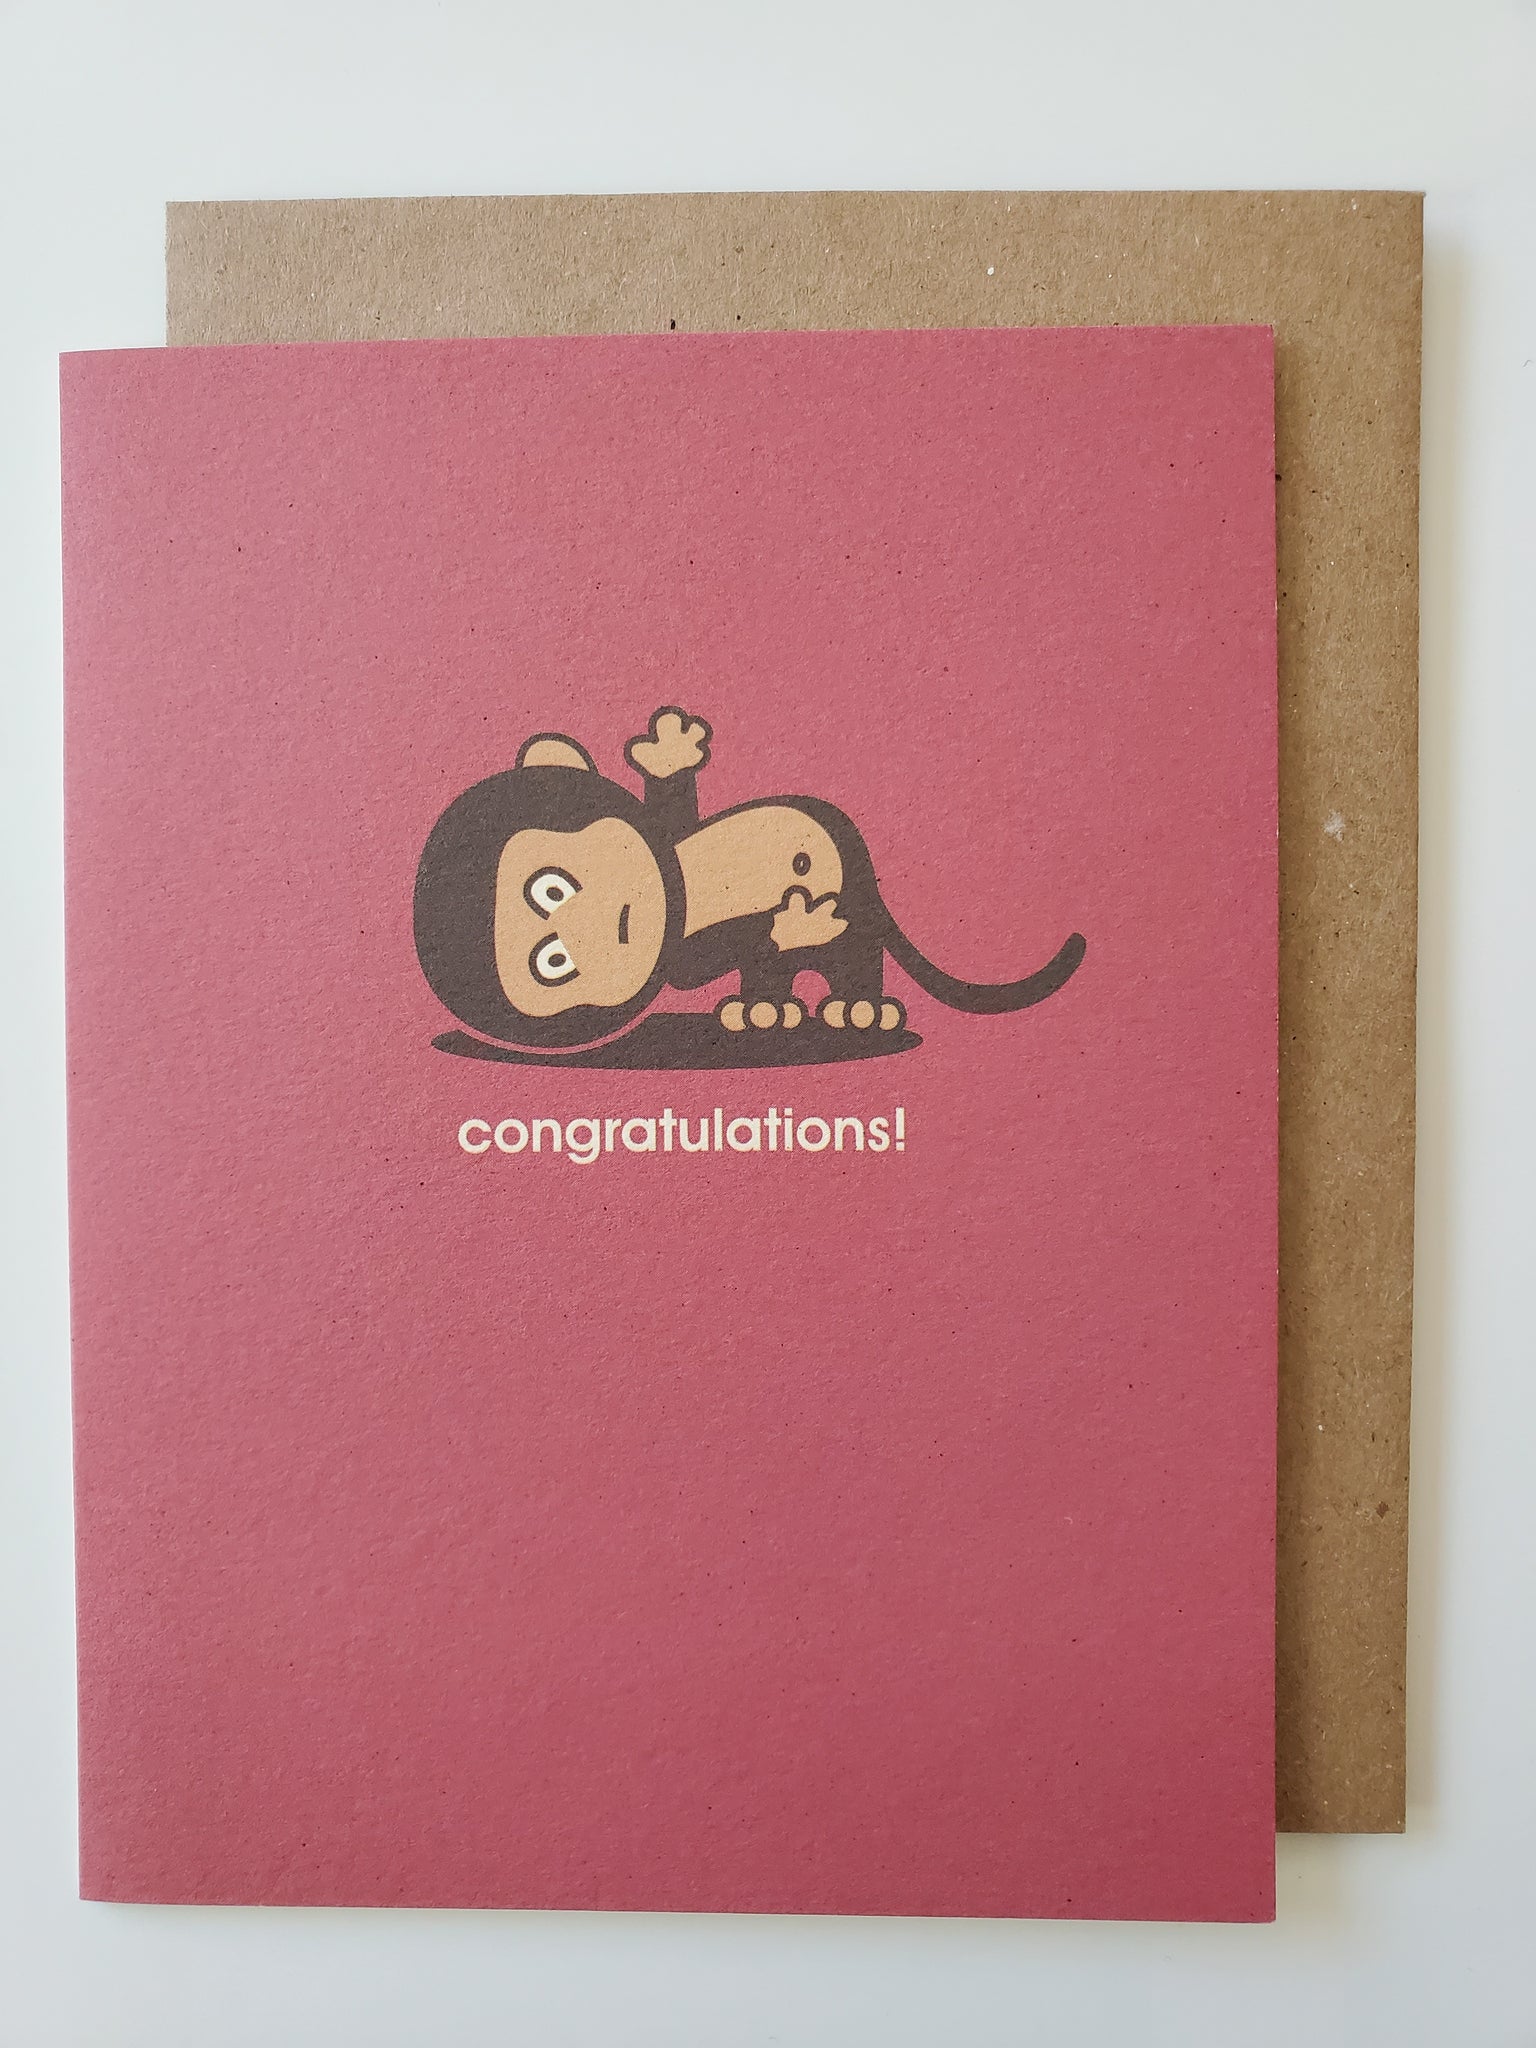 congrats - big headed monkey